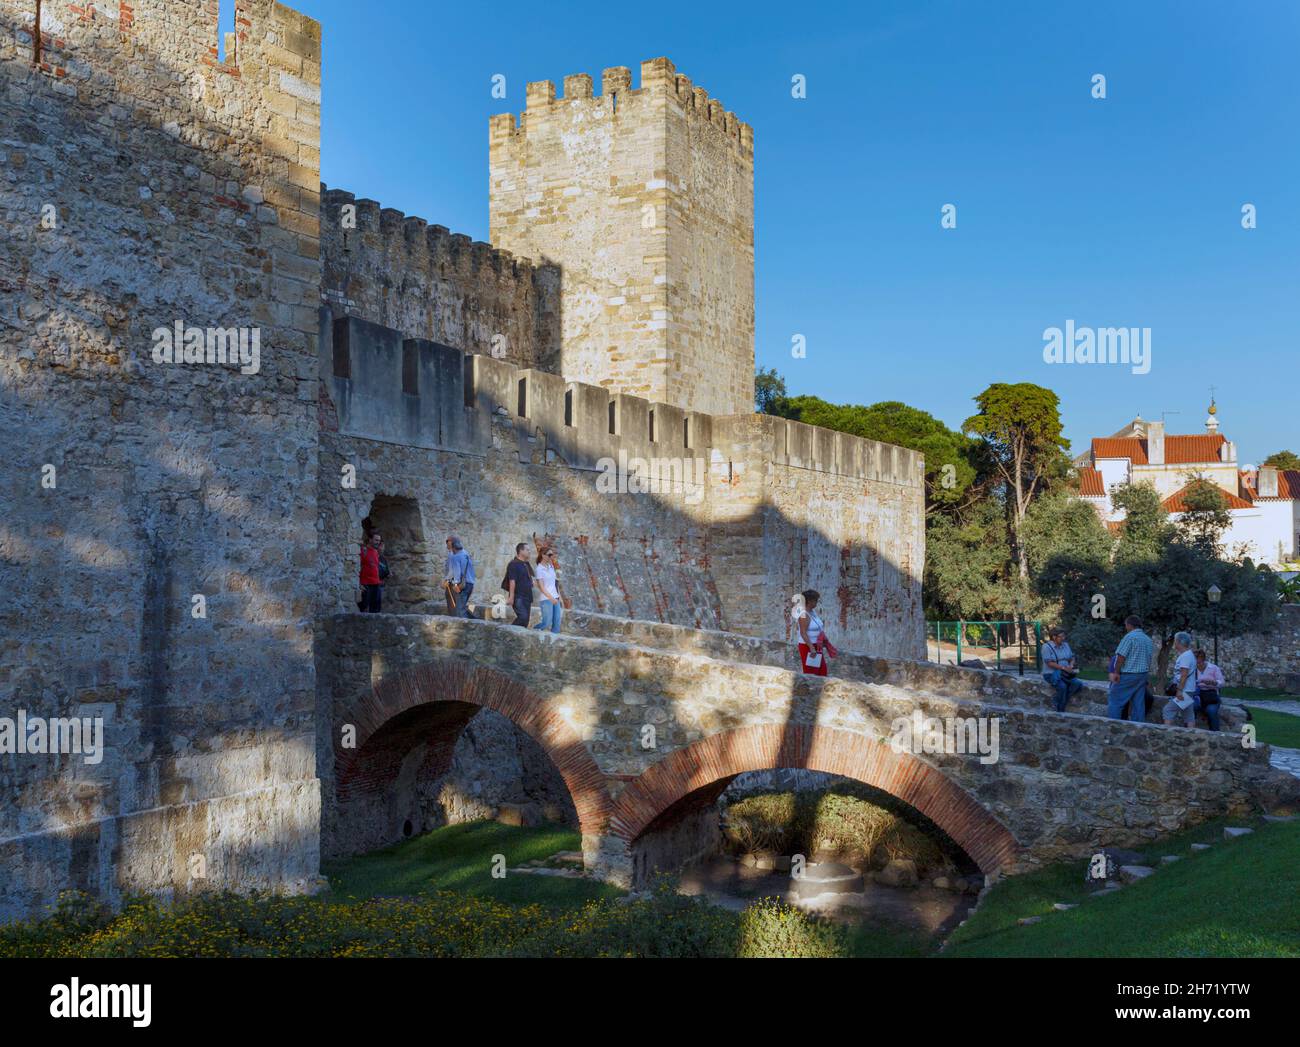 Lisbonne, Portugal.Entrée au Castelo de Sao Jorge.Le château de Saint George. Banque D'Images